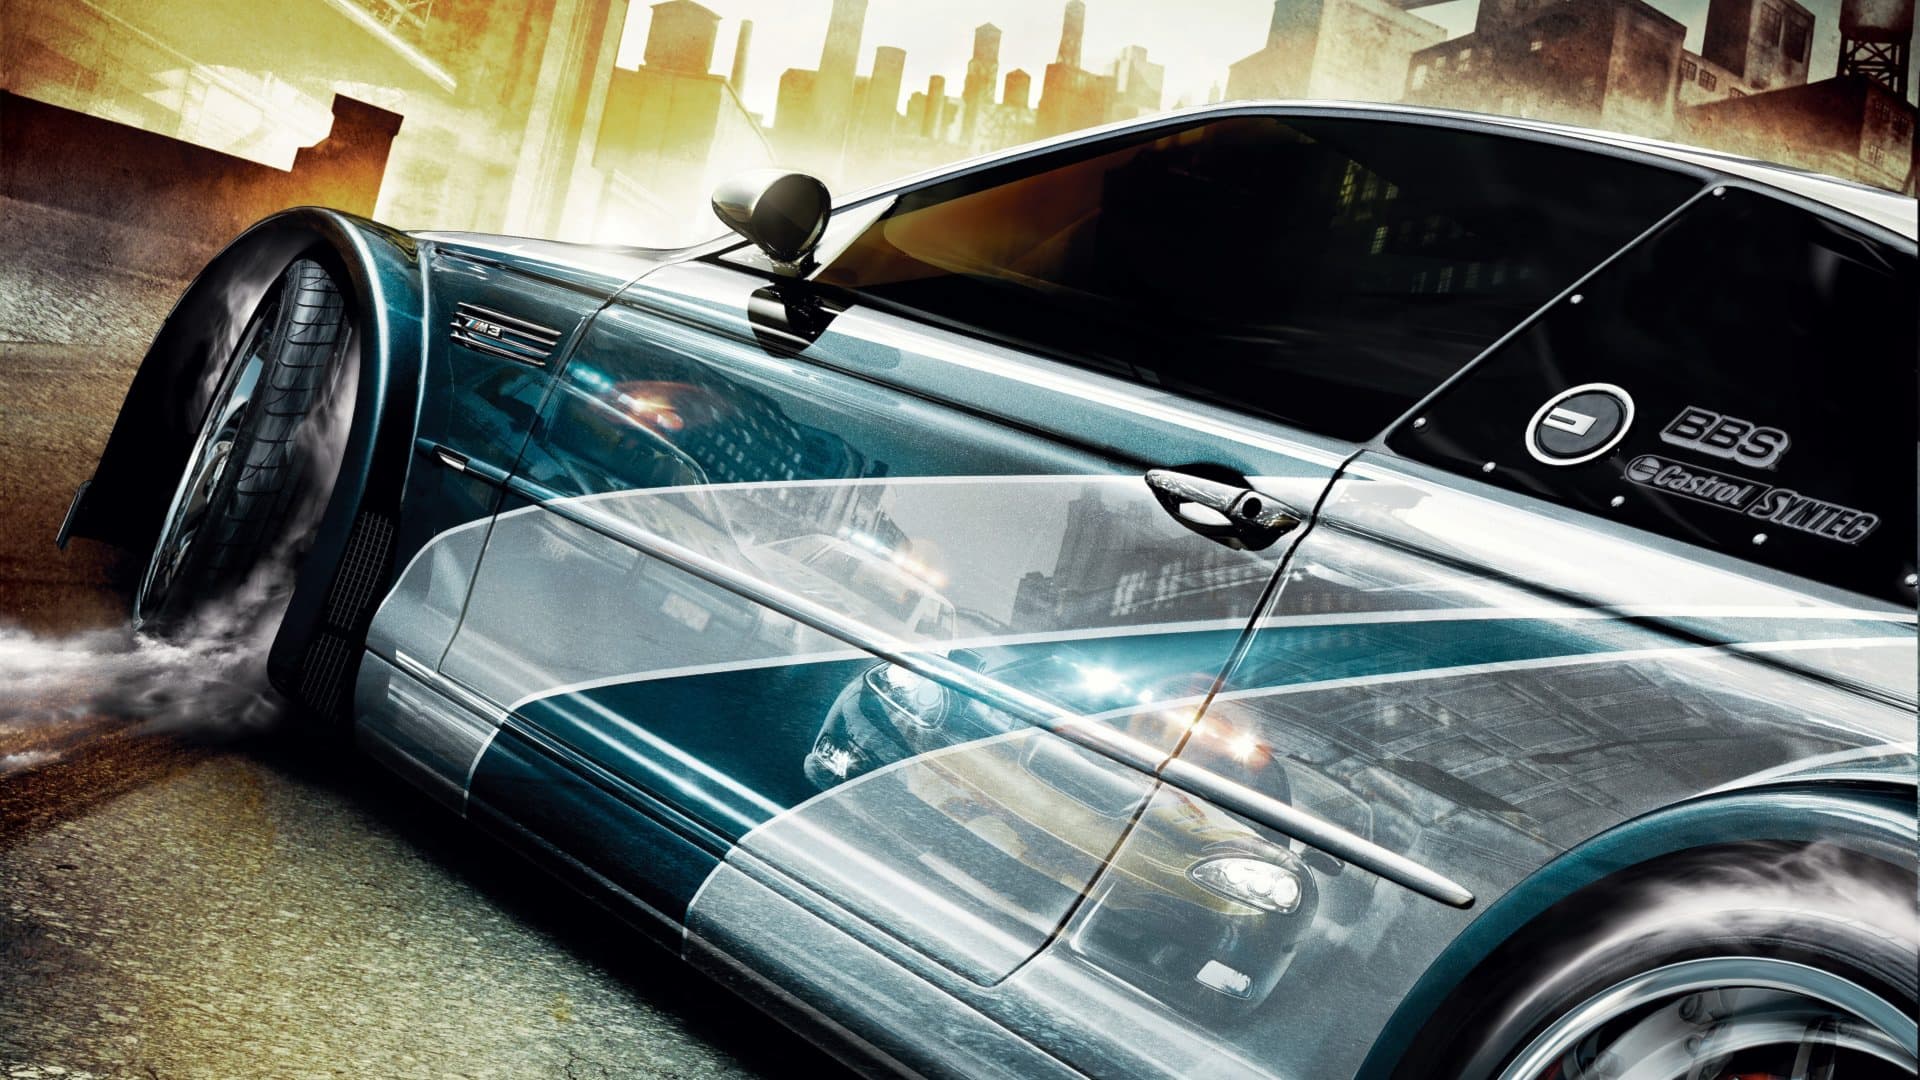 Remake de Need for Speed Most Wanted chega em 2024, diz atriz